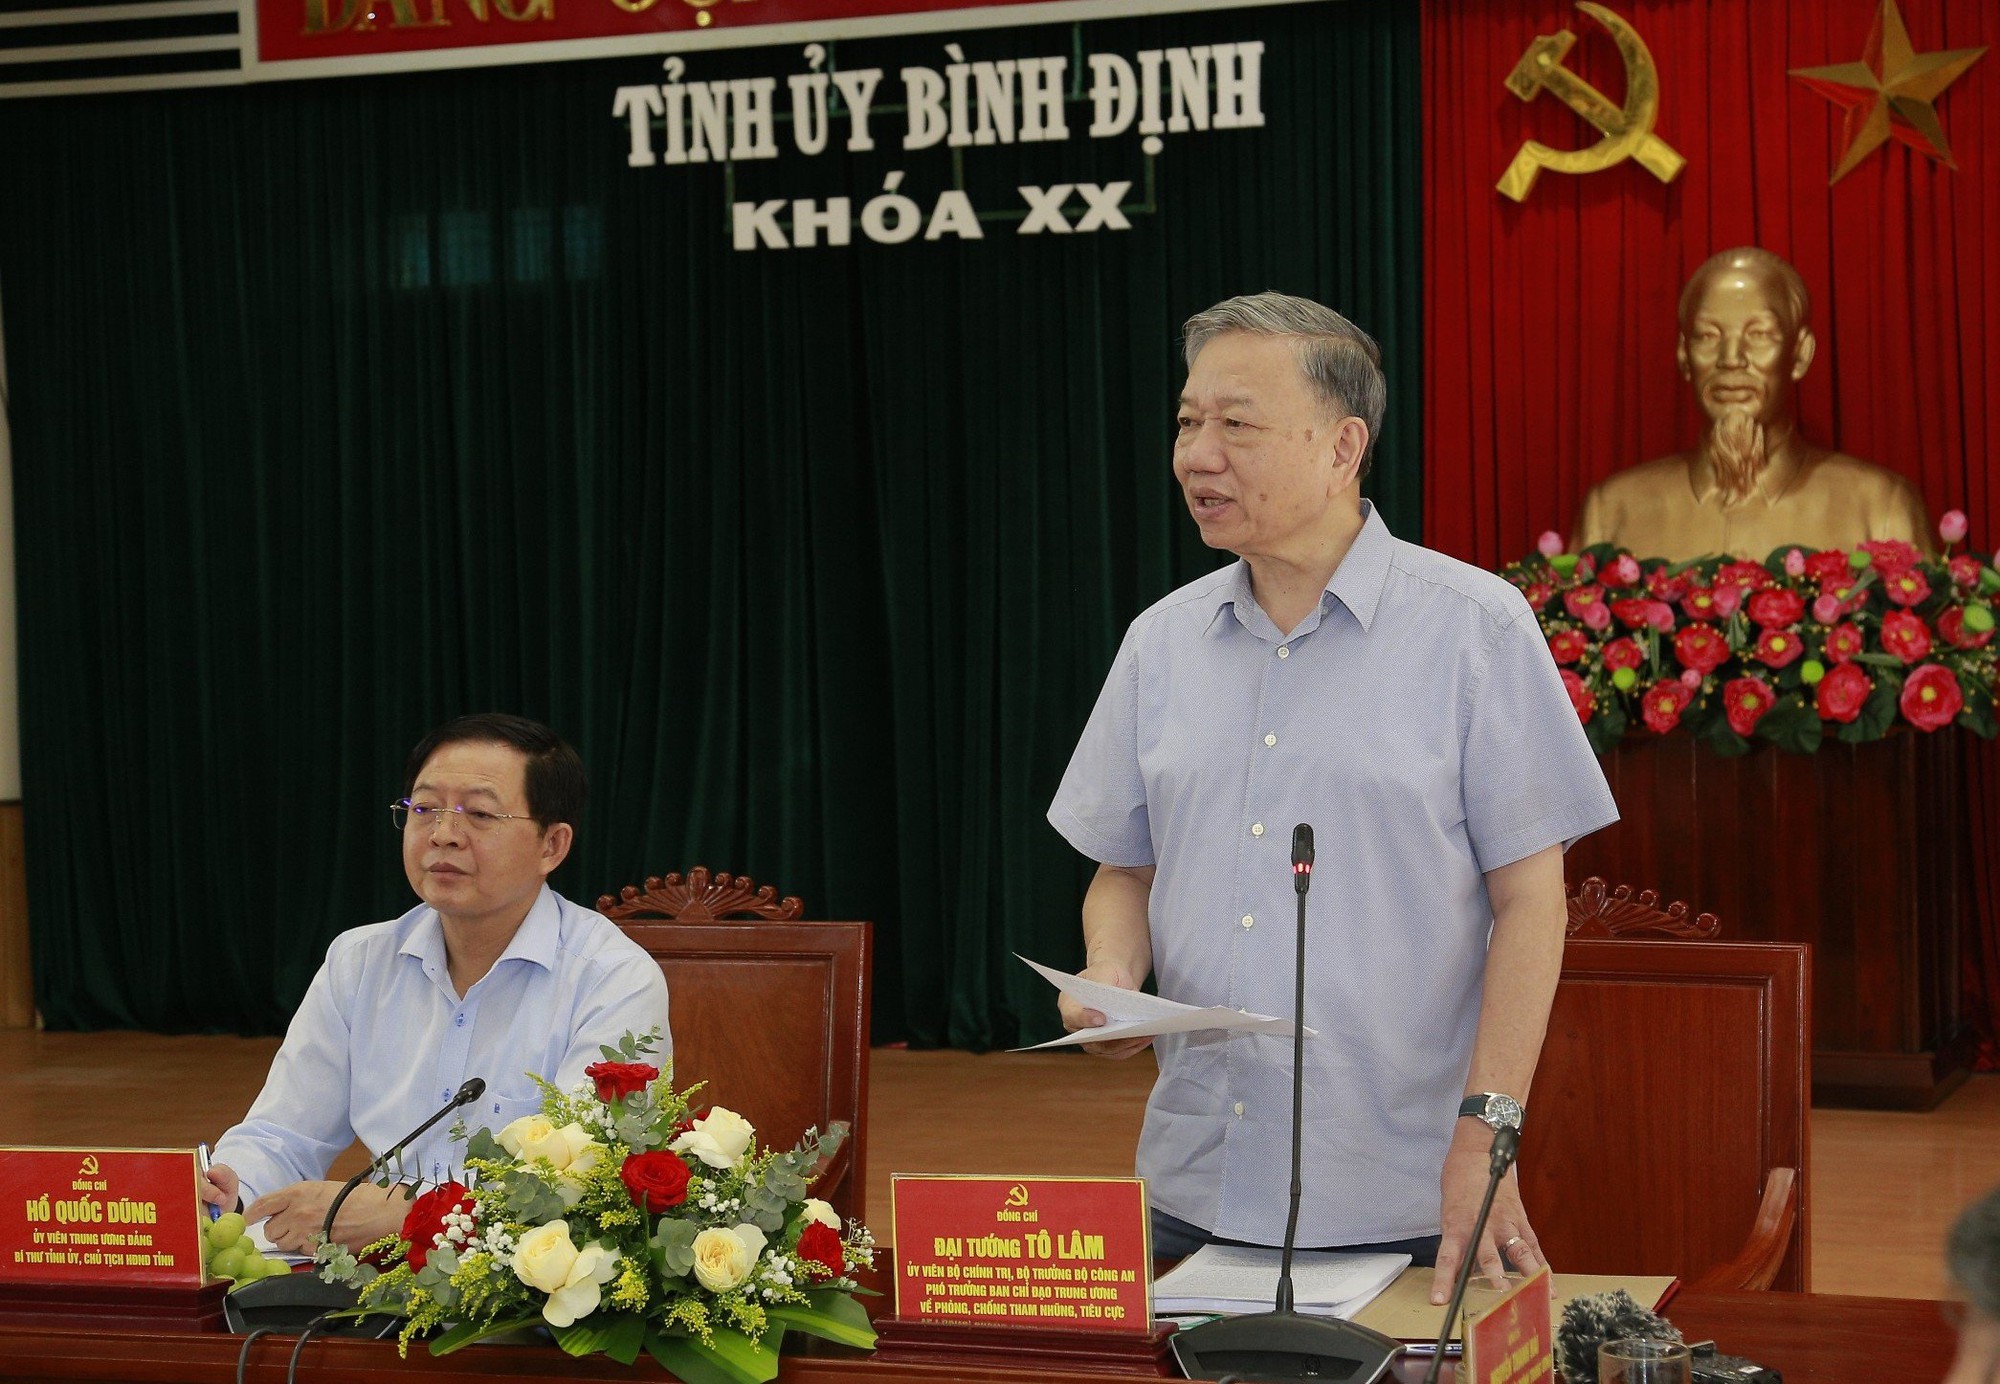 Bộ trưởng Tô Lâm: Mục tiêu cuối cùng là nâng cao đời sống nhân dân - Ảnh 2.